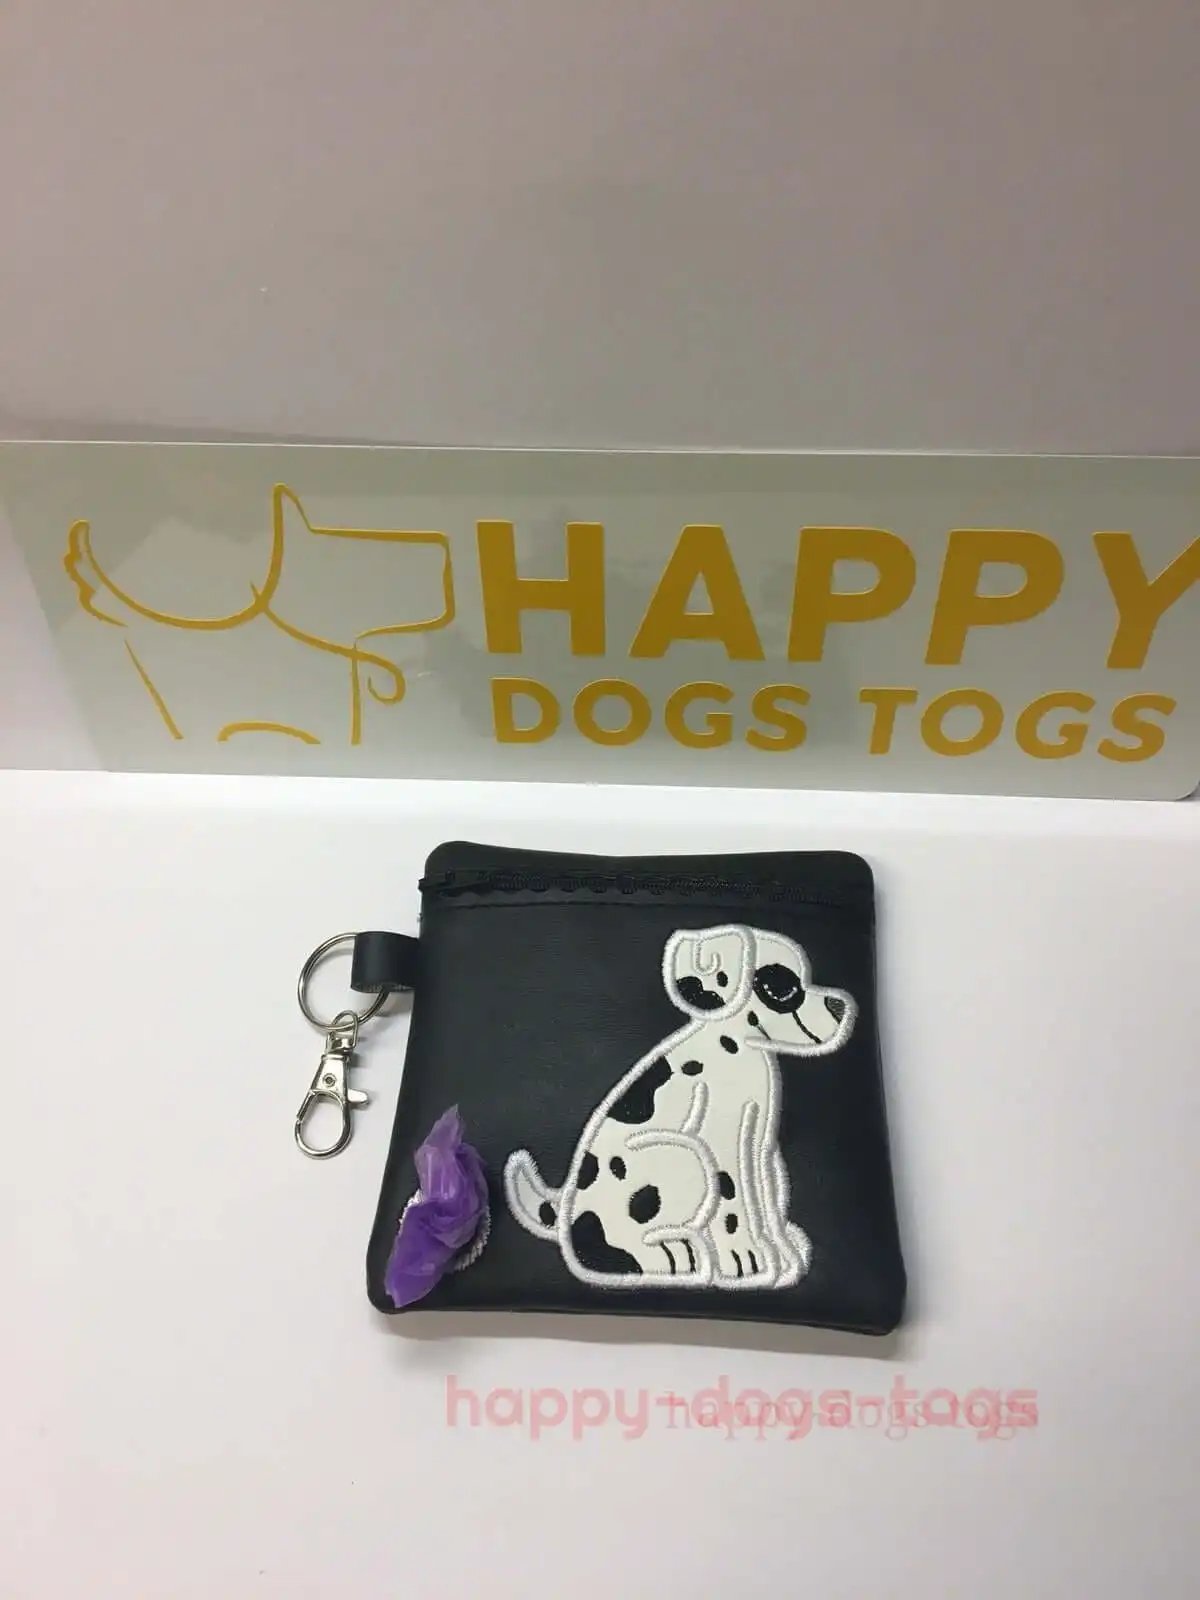 Black Embroidered Sitting Dalmation Dog poo bag dispenser